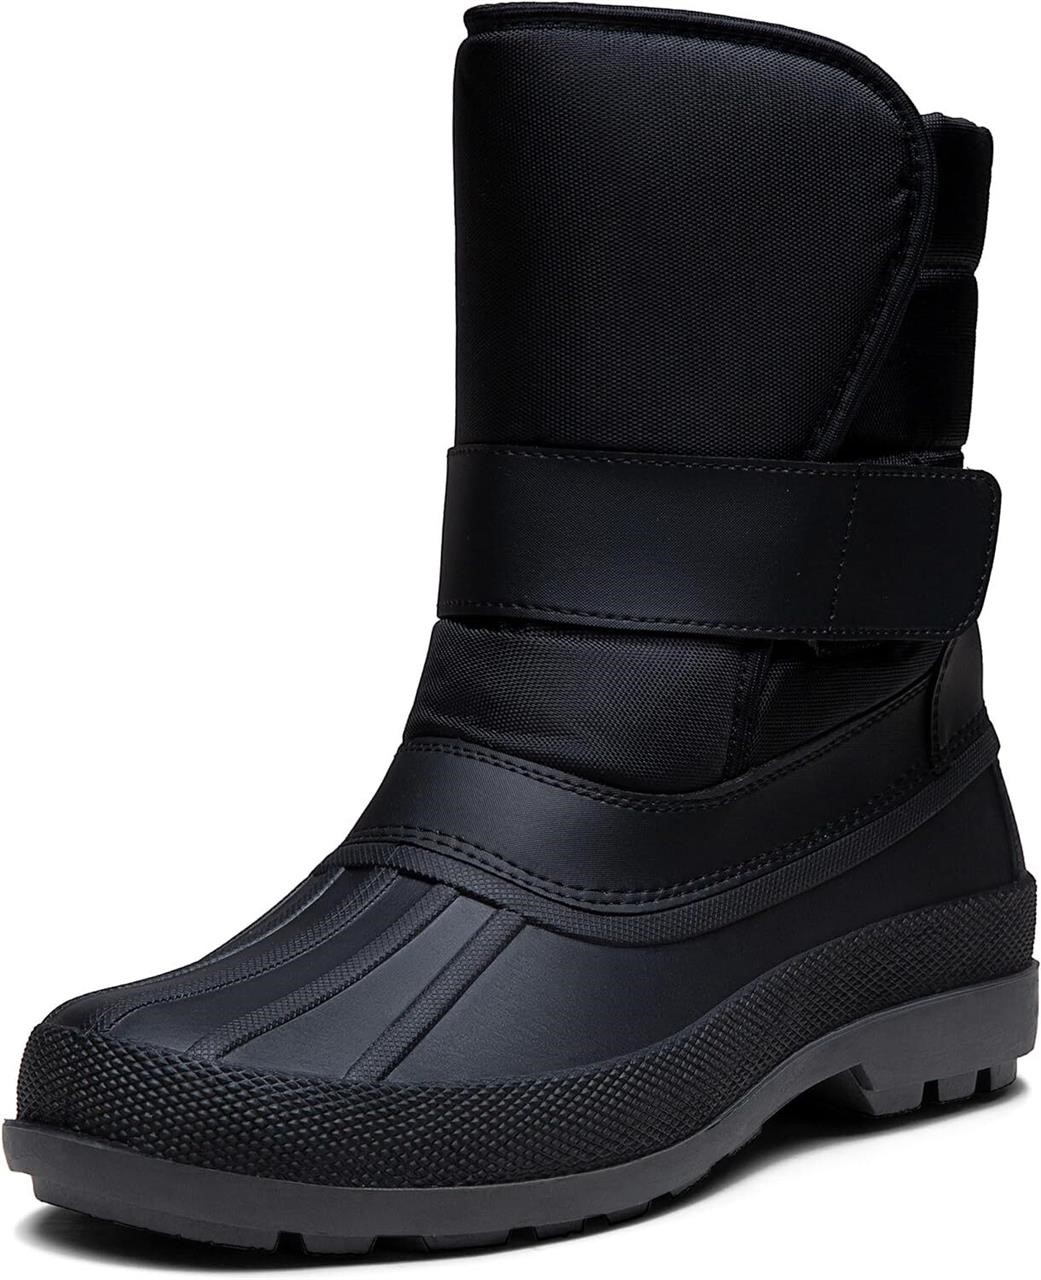 Jousen Men's Winter Boots  8  Amy692a  Black